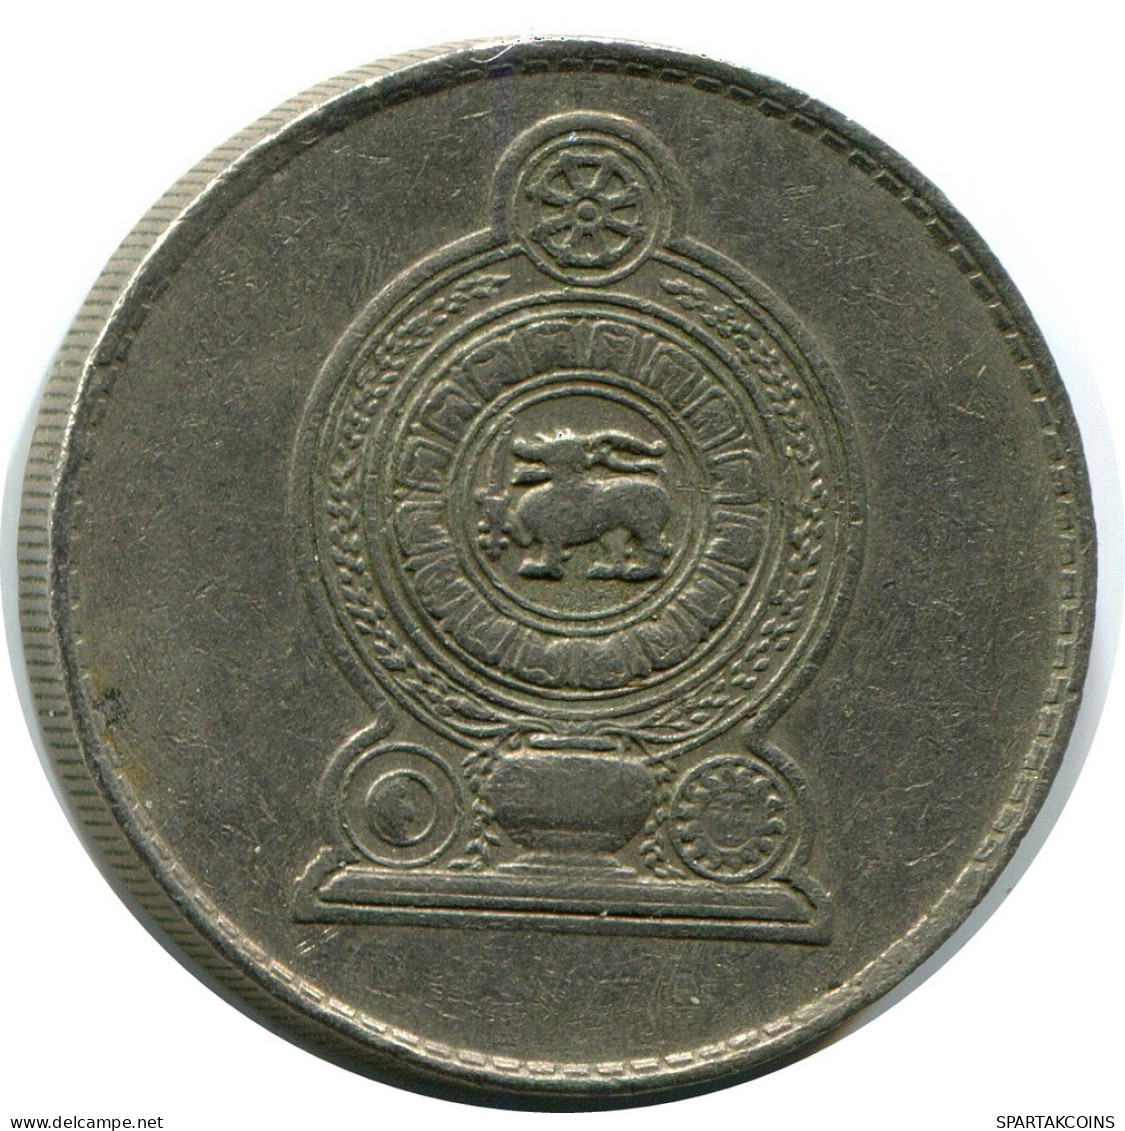 1 RUPEE 1982 SRI LANKA Münze #AZ226.D.A - Sri Lanka (Ceylon)